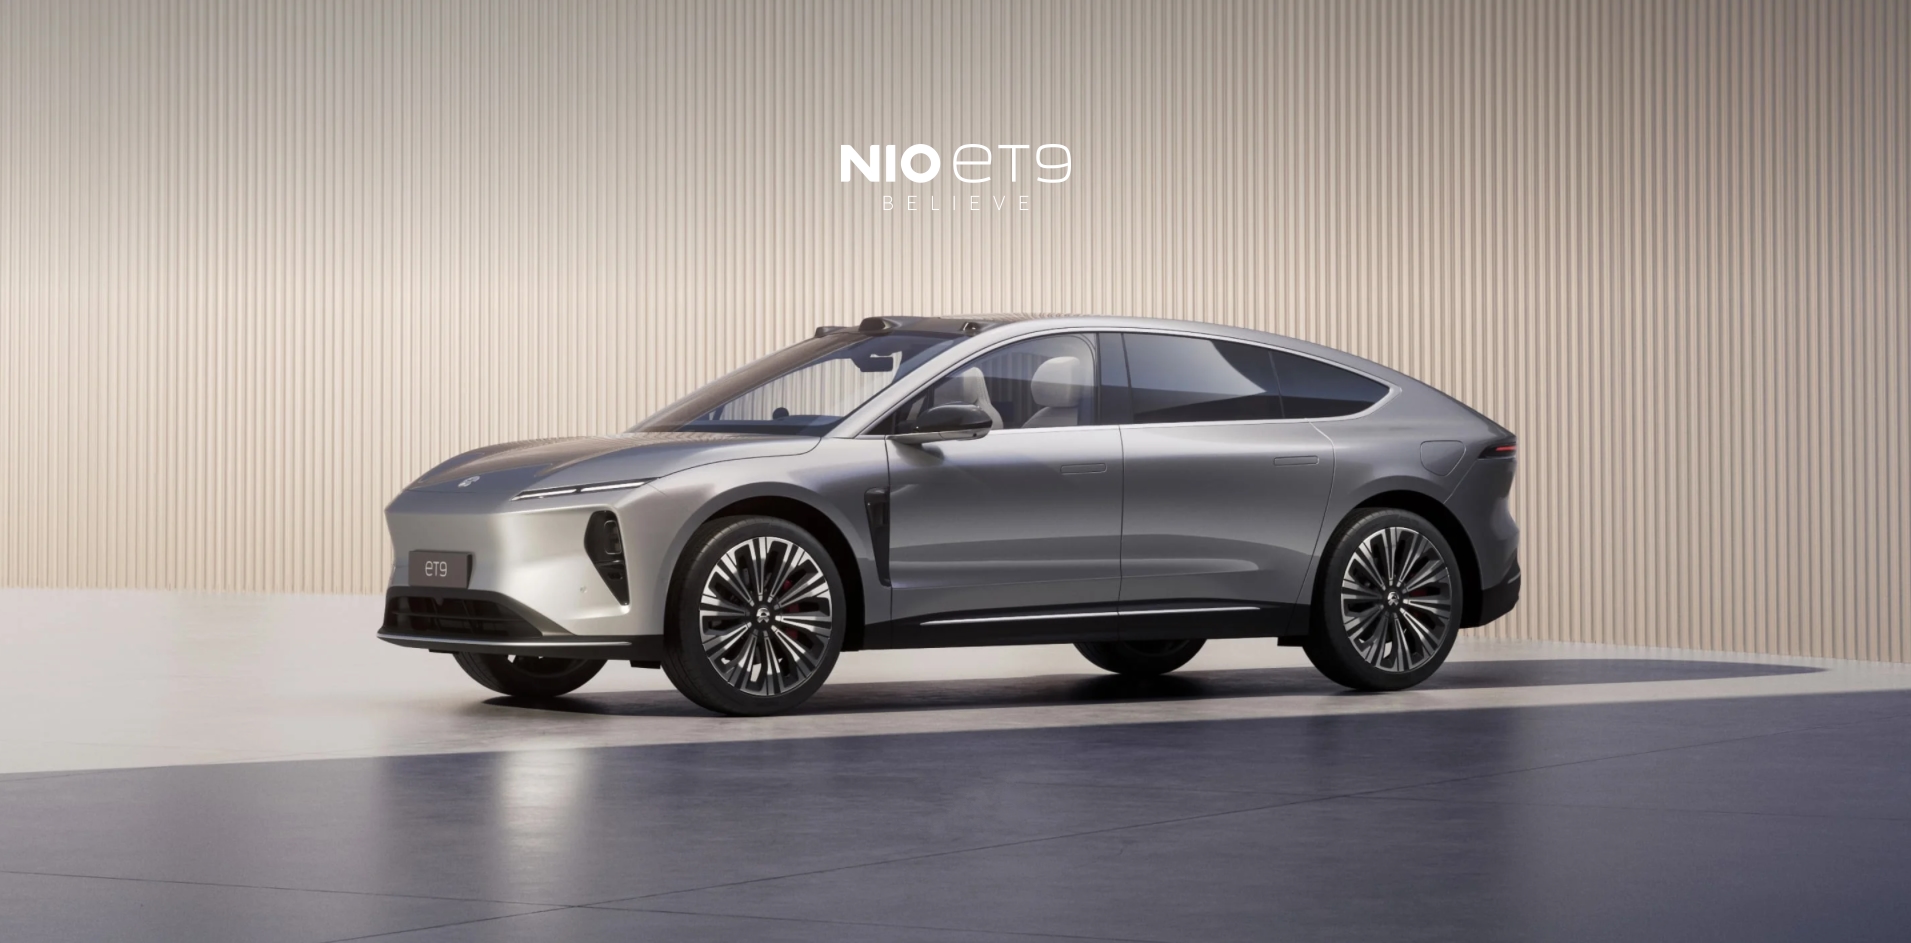 Для конкуренції з Mercedes-Benz Maybach: Nio представила преміальний електромобіль ET9 за $112 000